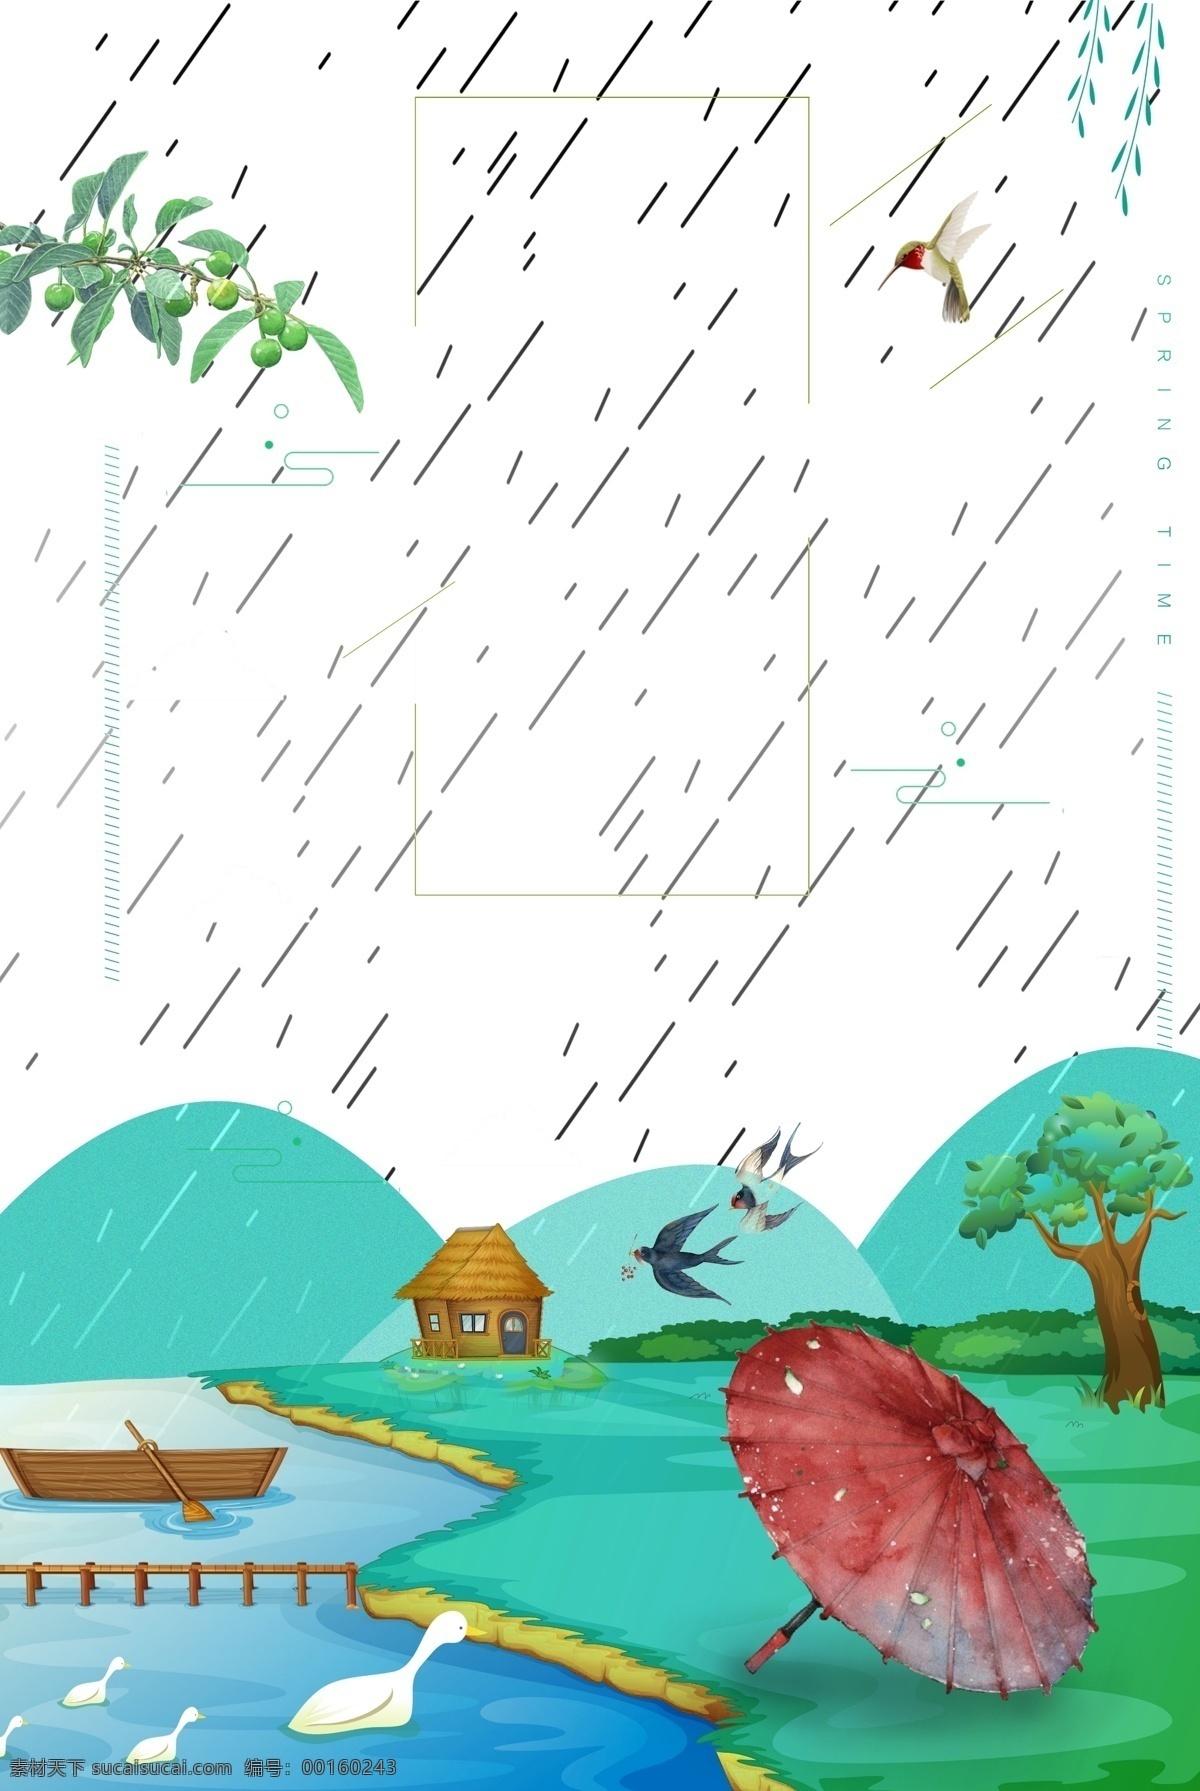 清新 雨季 风景 装饰 元素 树枝 湖面 山坡 雨伞 大树 装饰元素 泛舟 褐色房屋